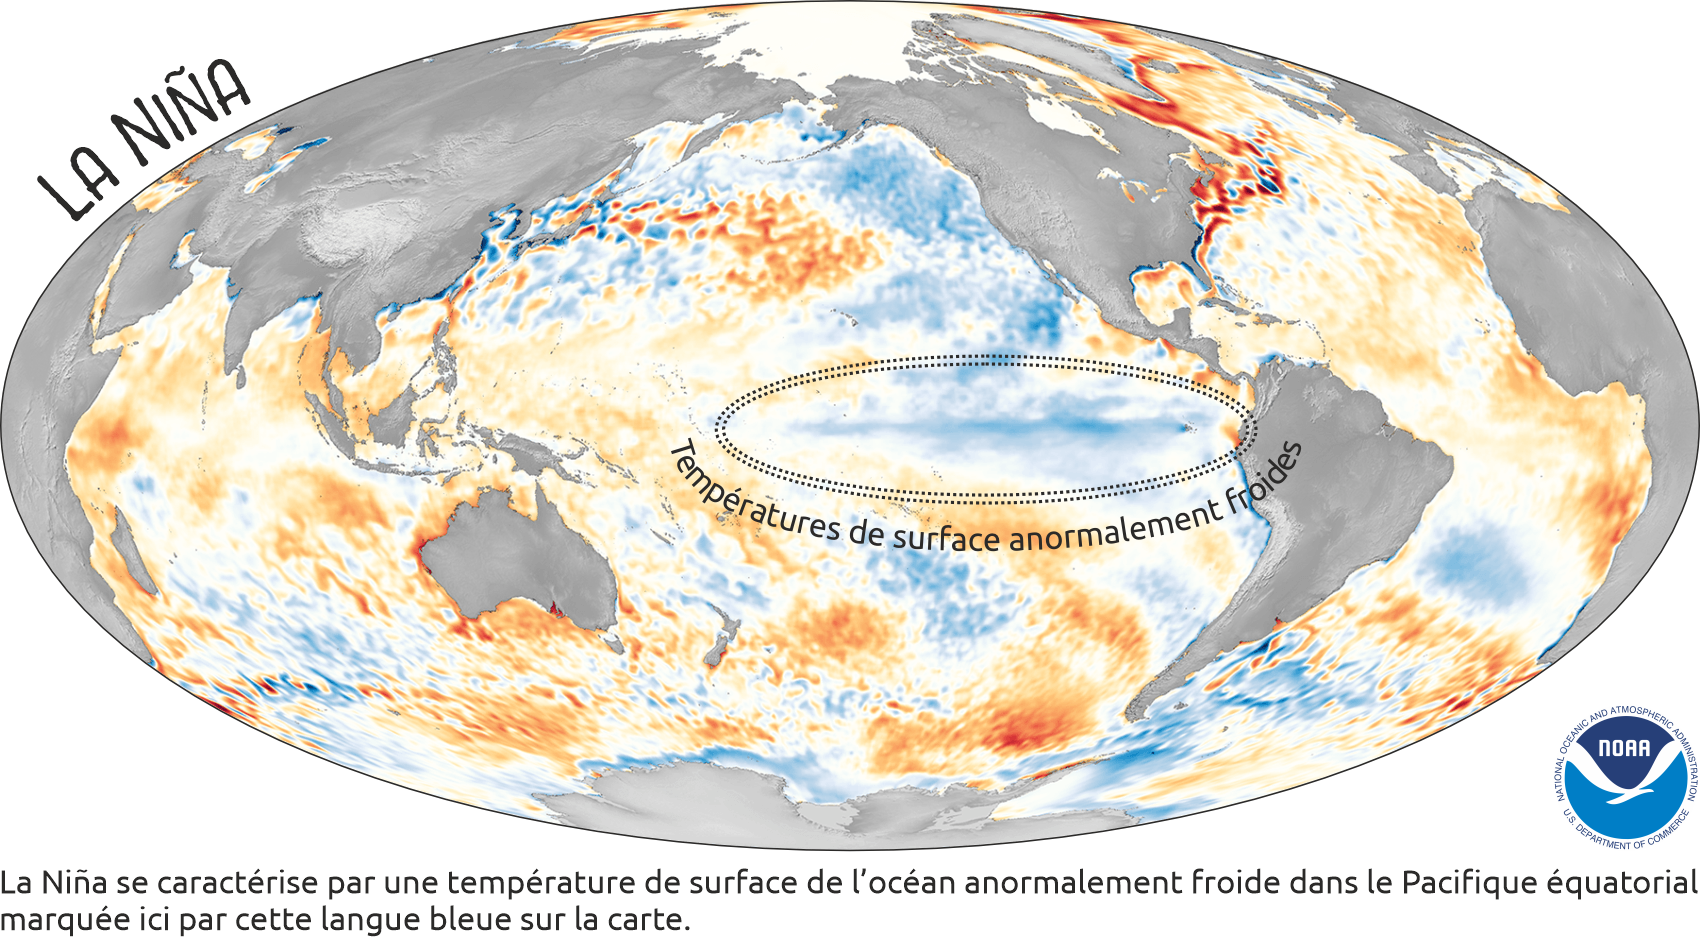 La Nina se caractérise par une température de surface anormalement froide dans l'océan Pacifique éauatorial